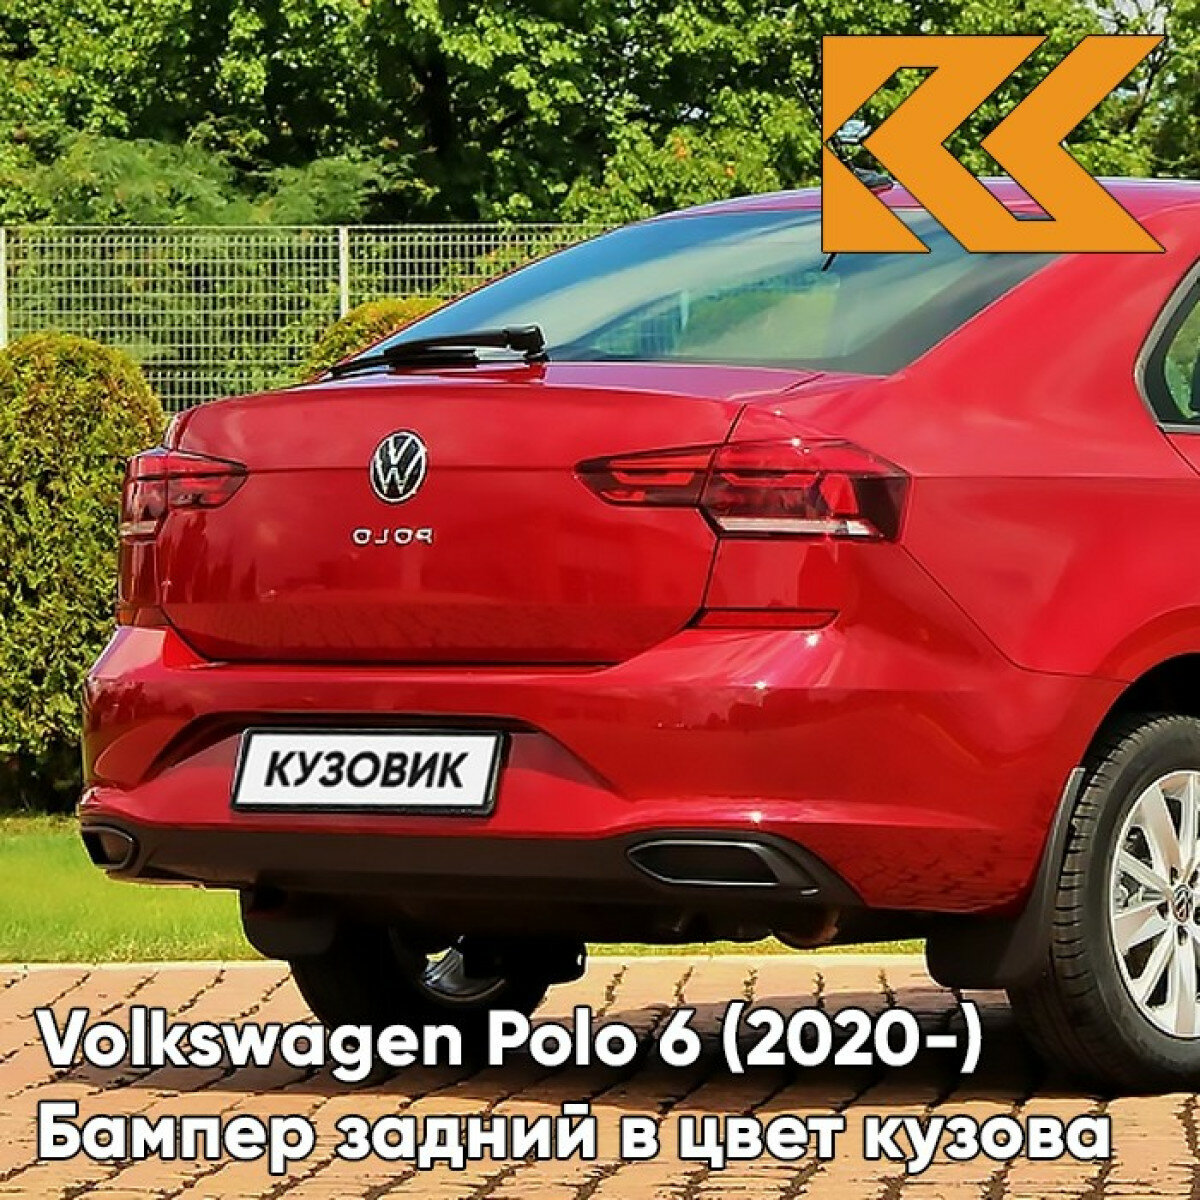 Бампер задний в цвет Volkswagen Polo 6 (2020-) V9 - LA3Q RUBY RED - Красный